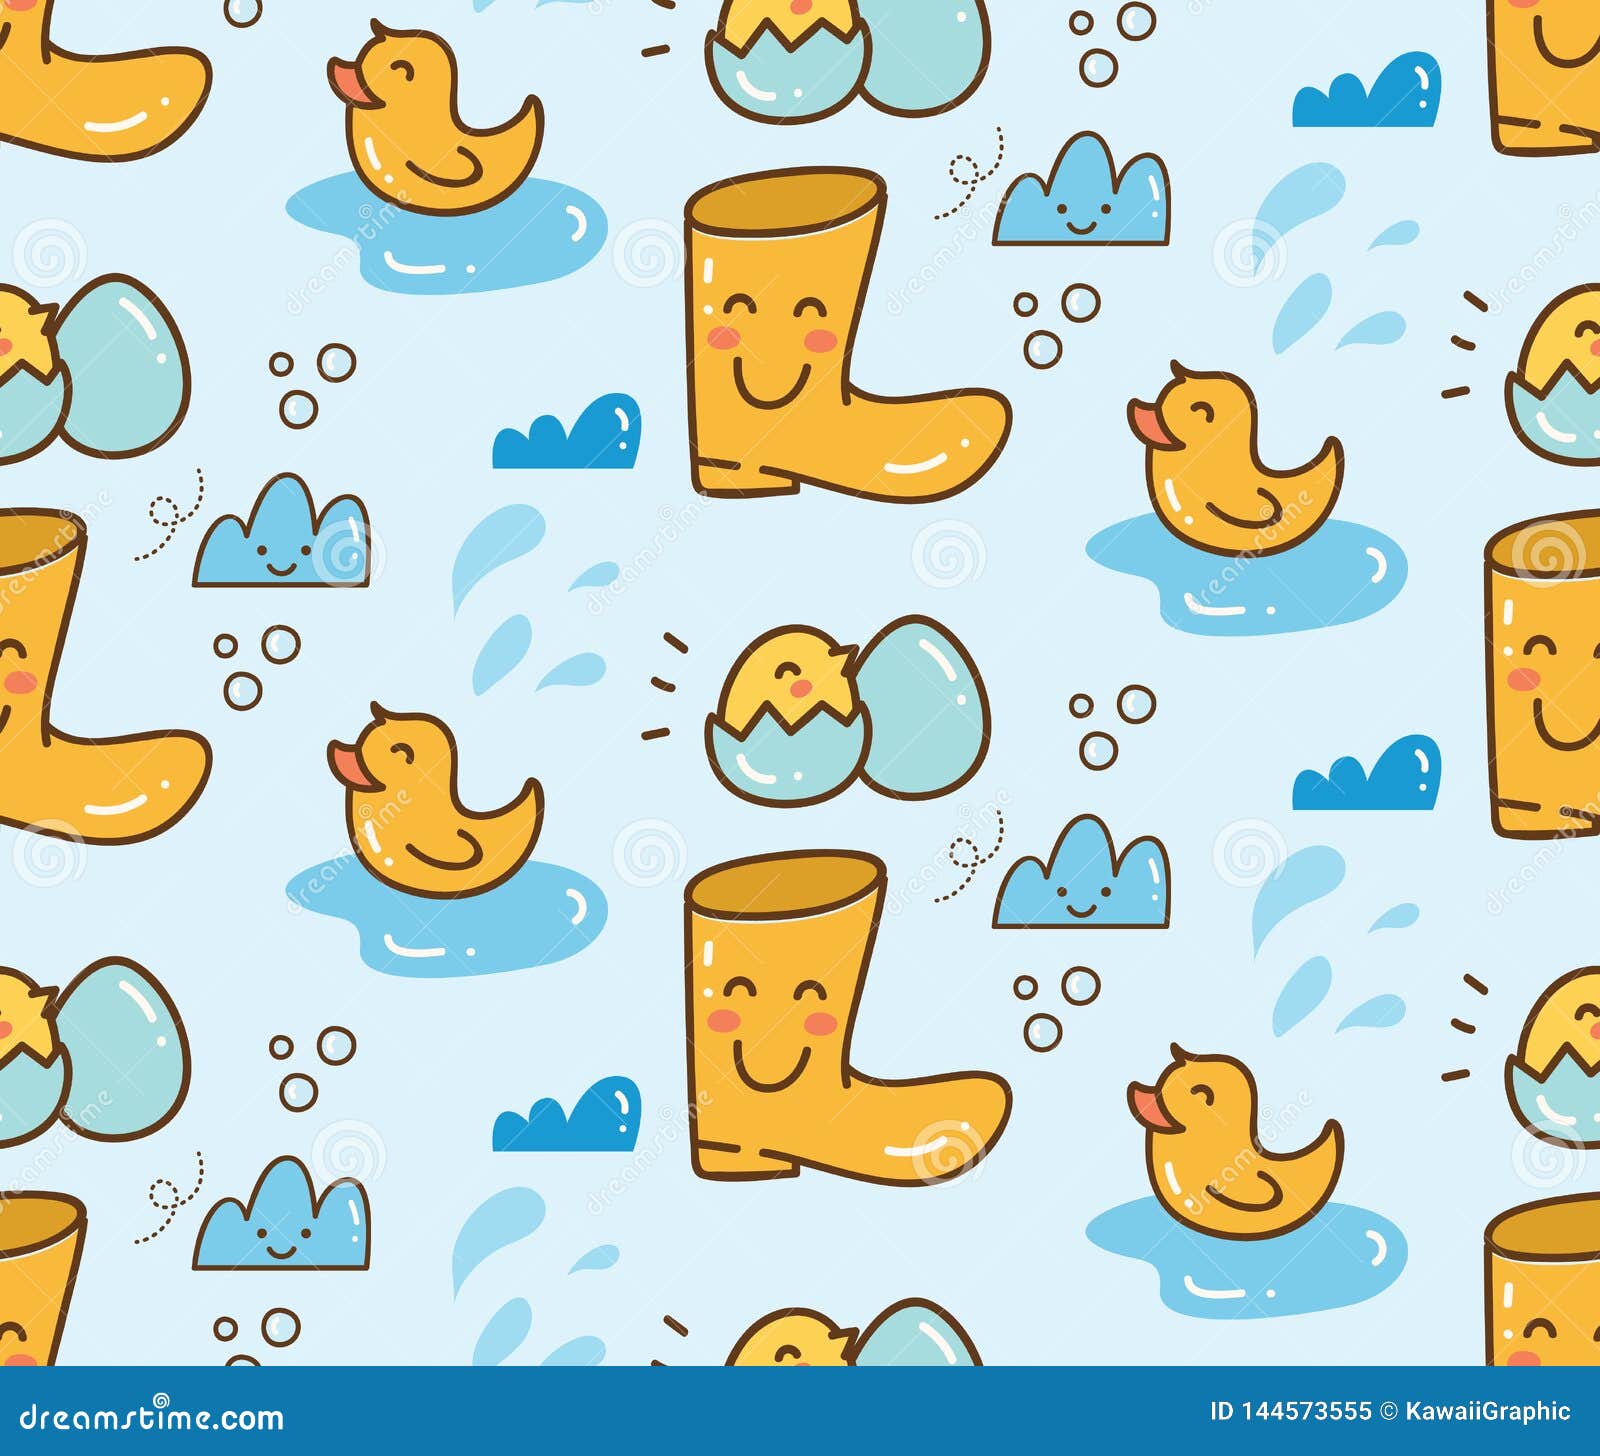 Kawaii Duck Wallpapers  Wallpaper Cave